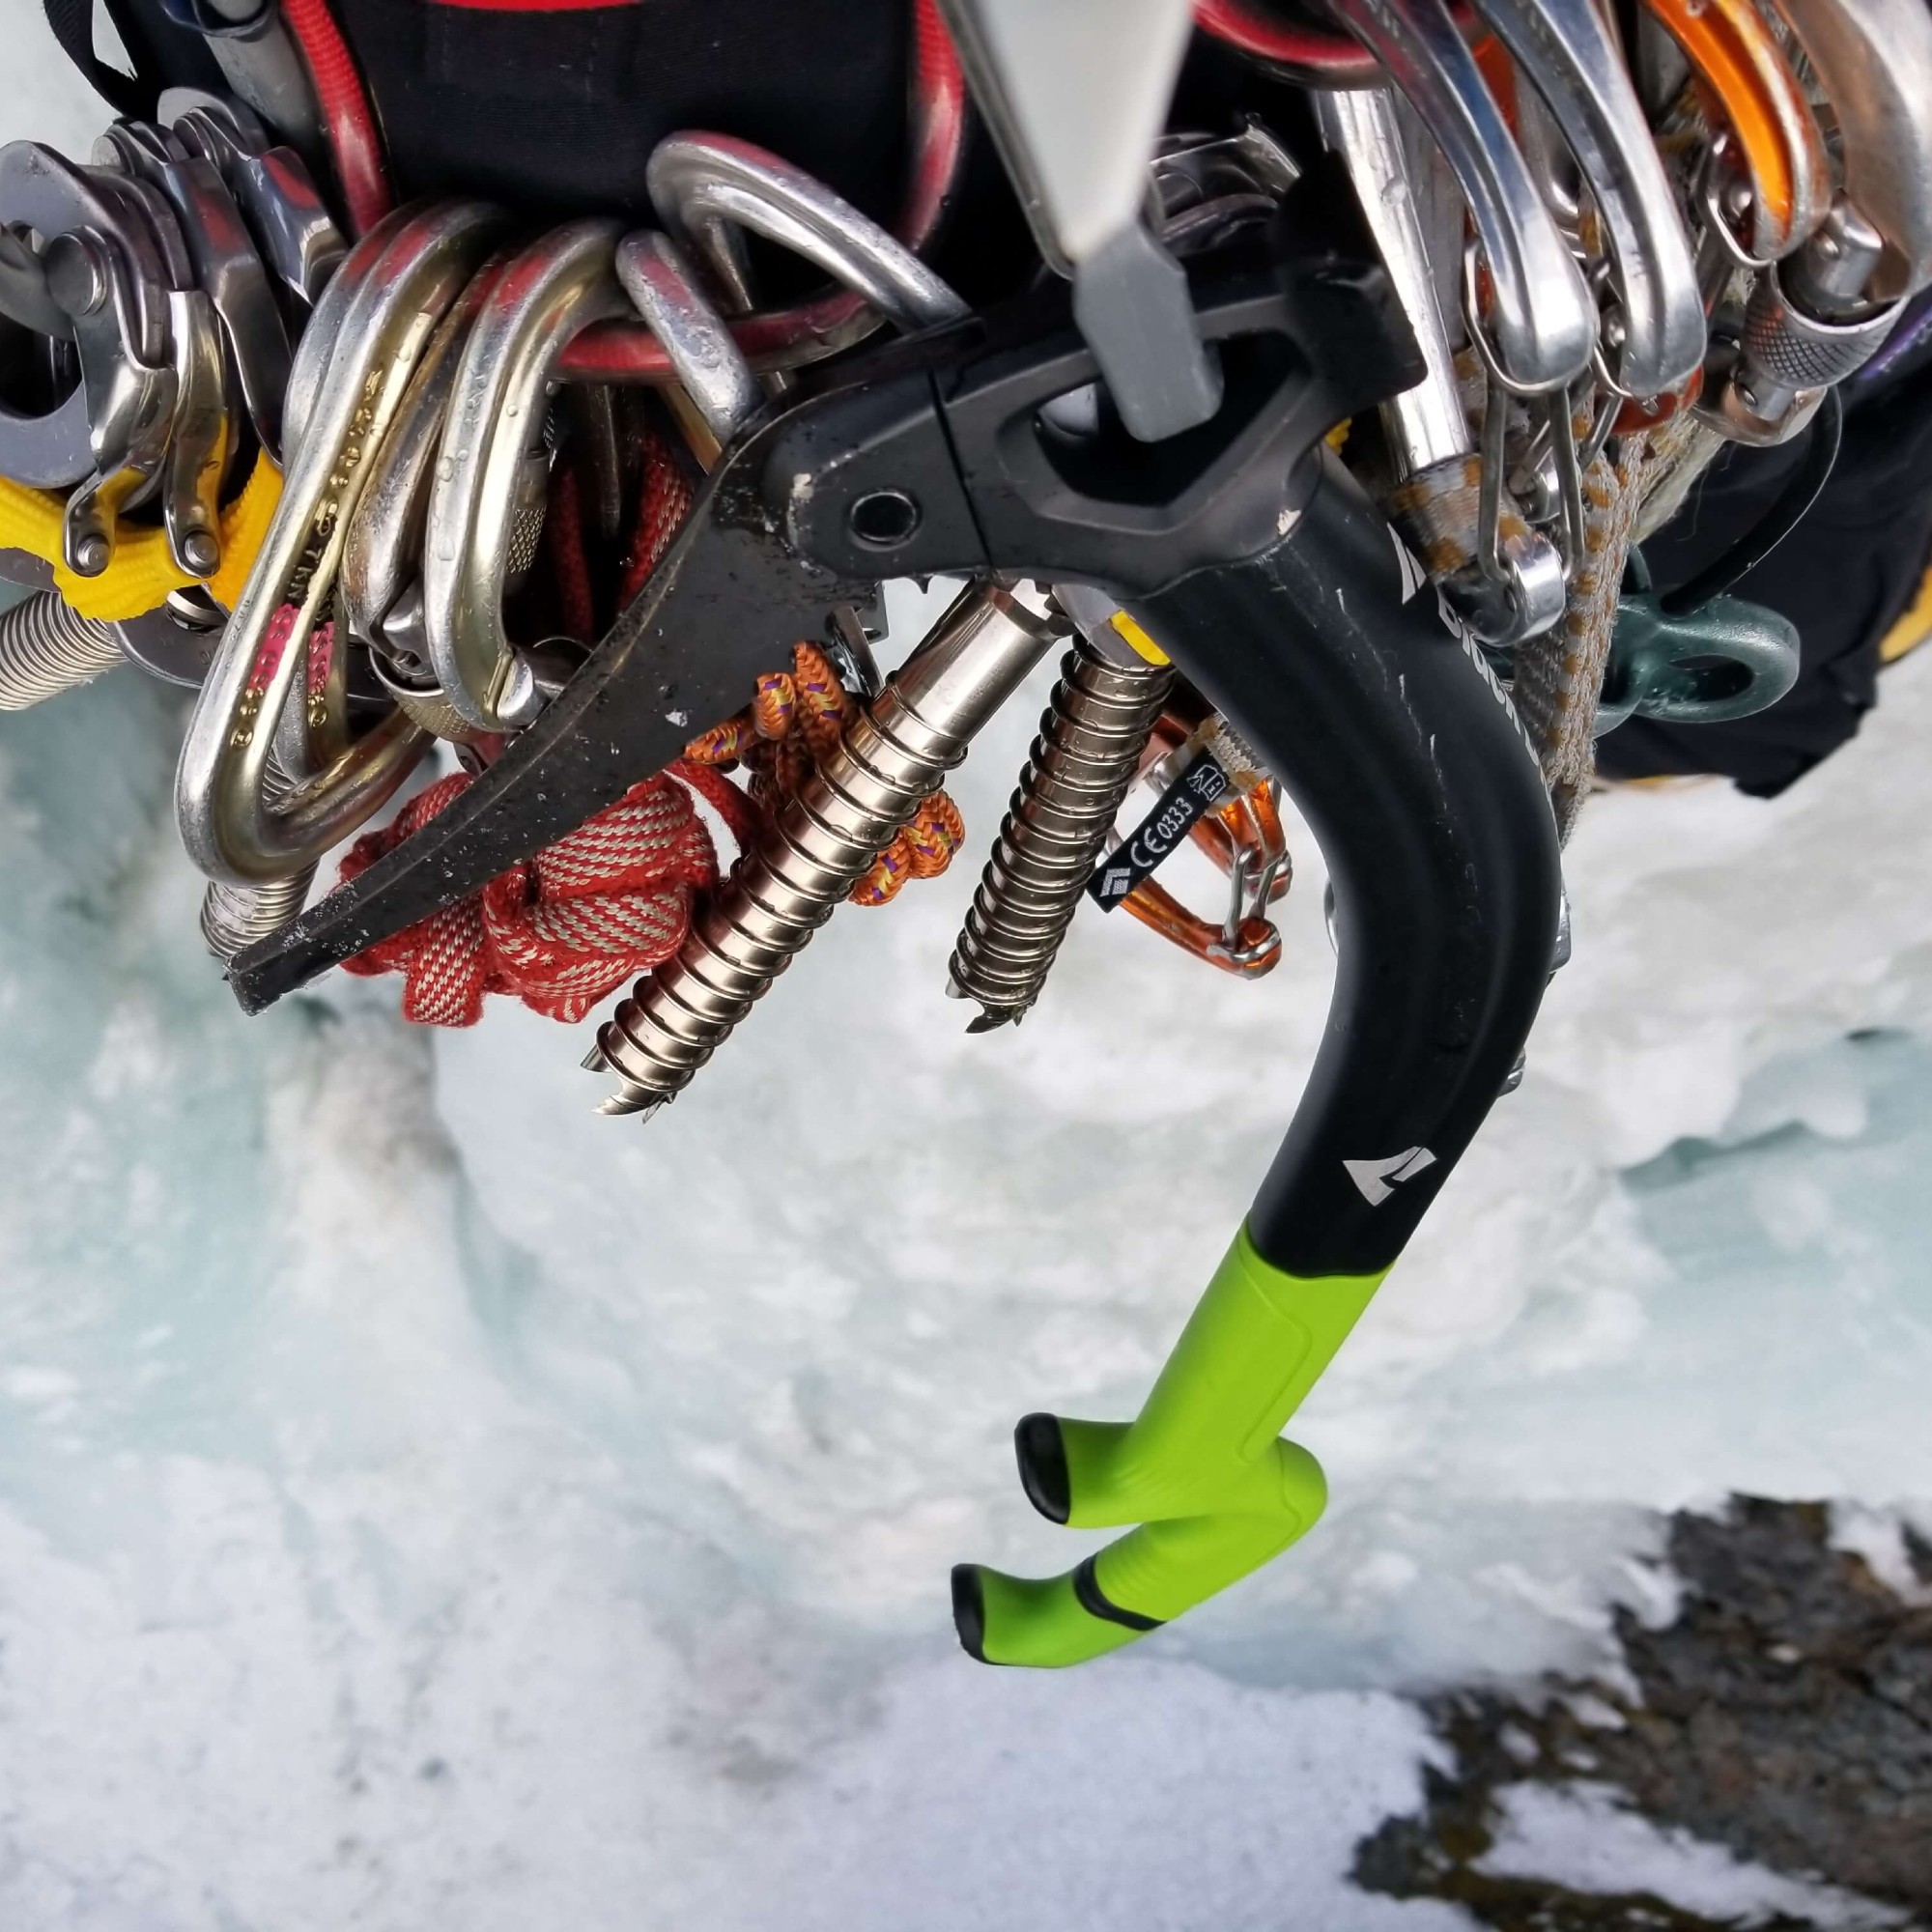 Black Diamond Fuel Ice Tool Mountaineering Ice Axe